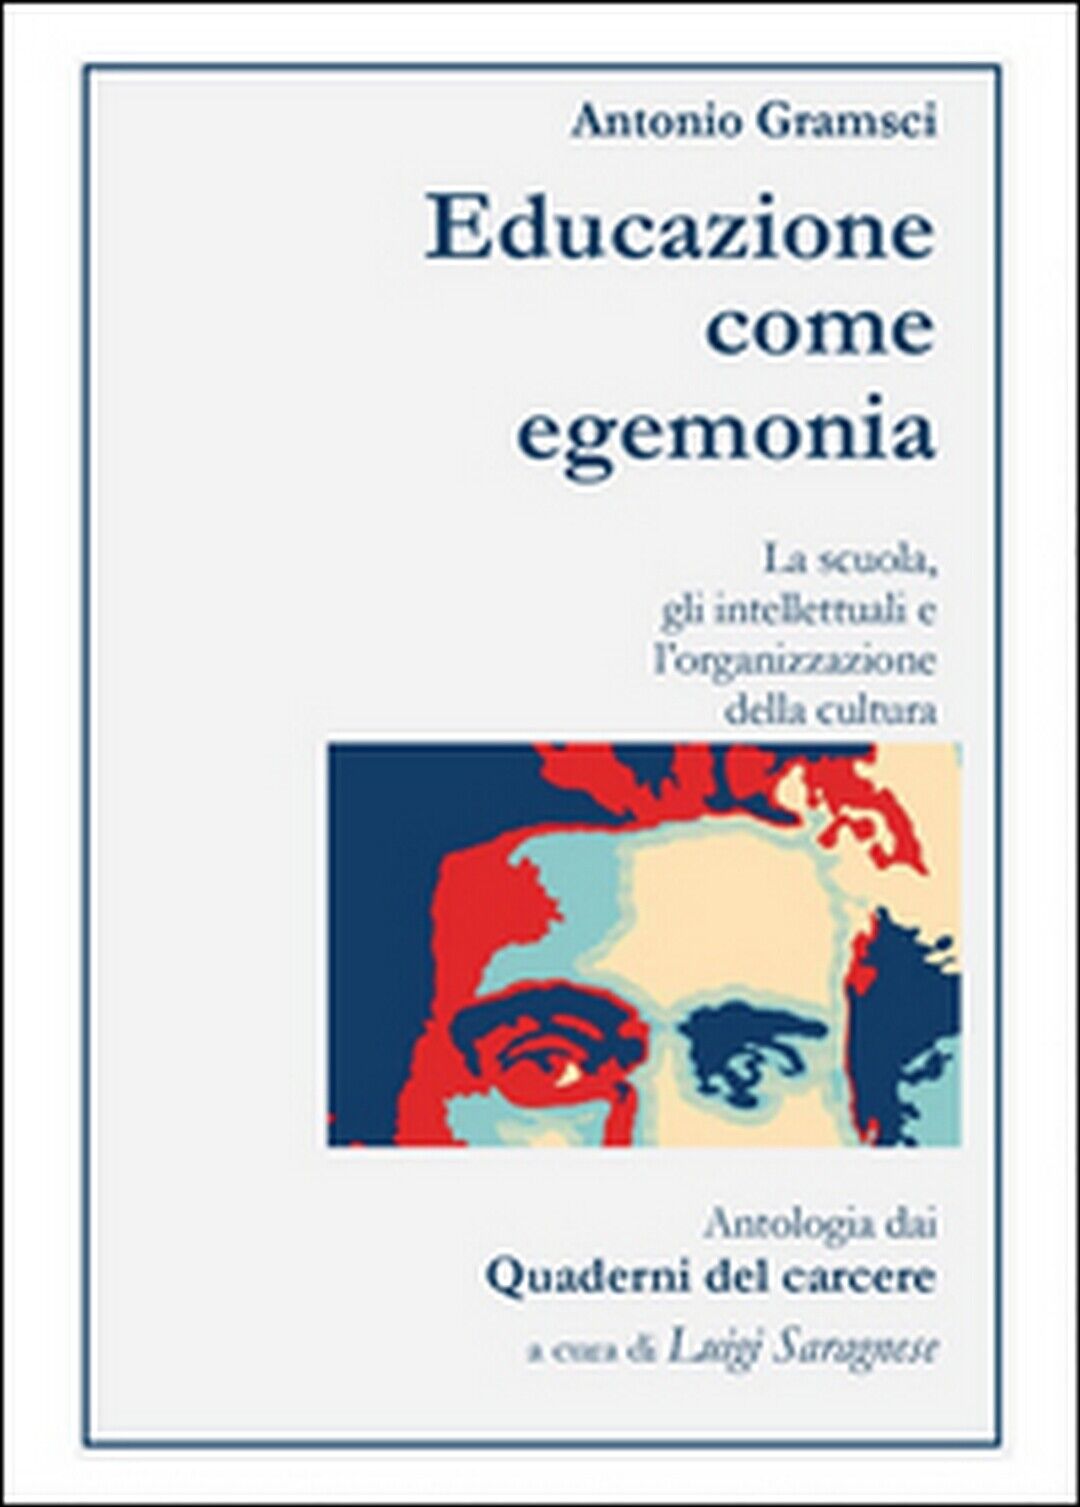 Antonio Gramsci. Educazione come egemonia, Luigi Saragnese,  2016